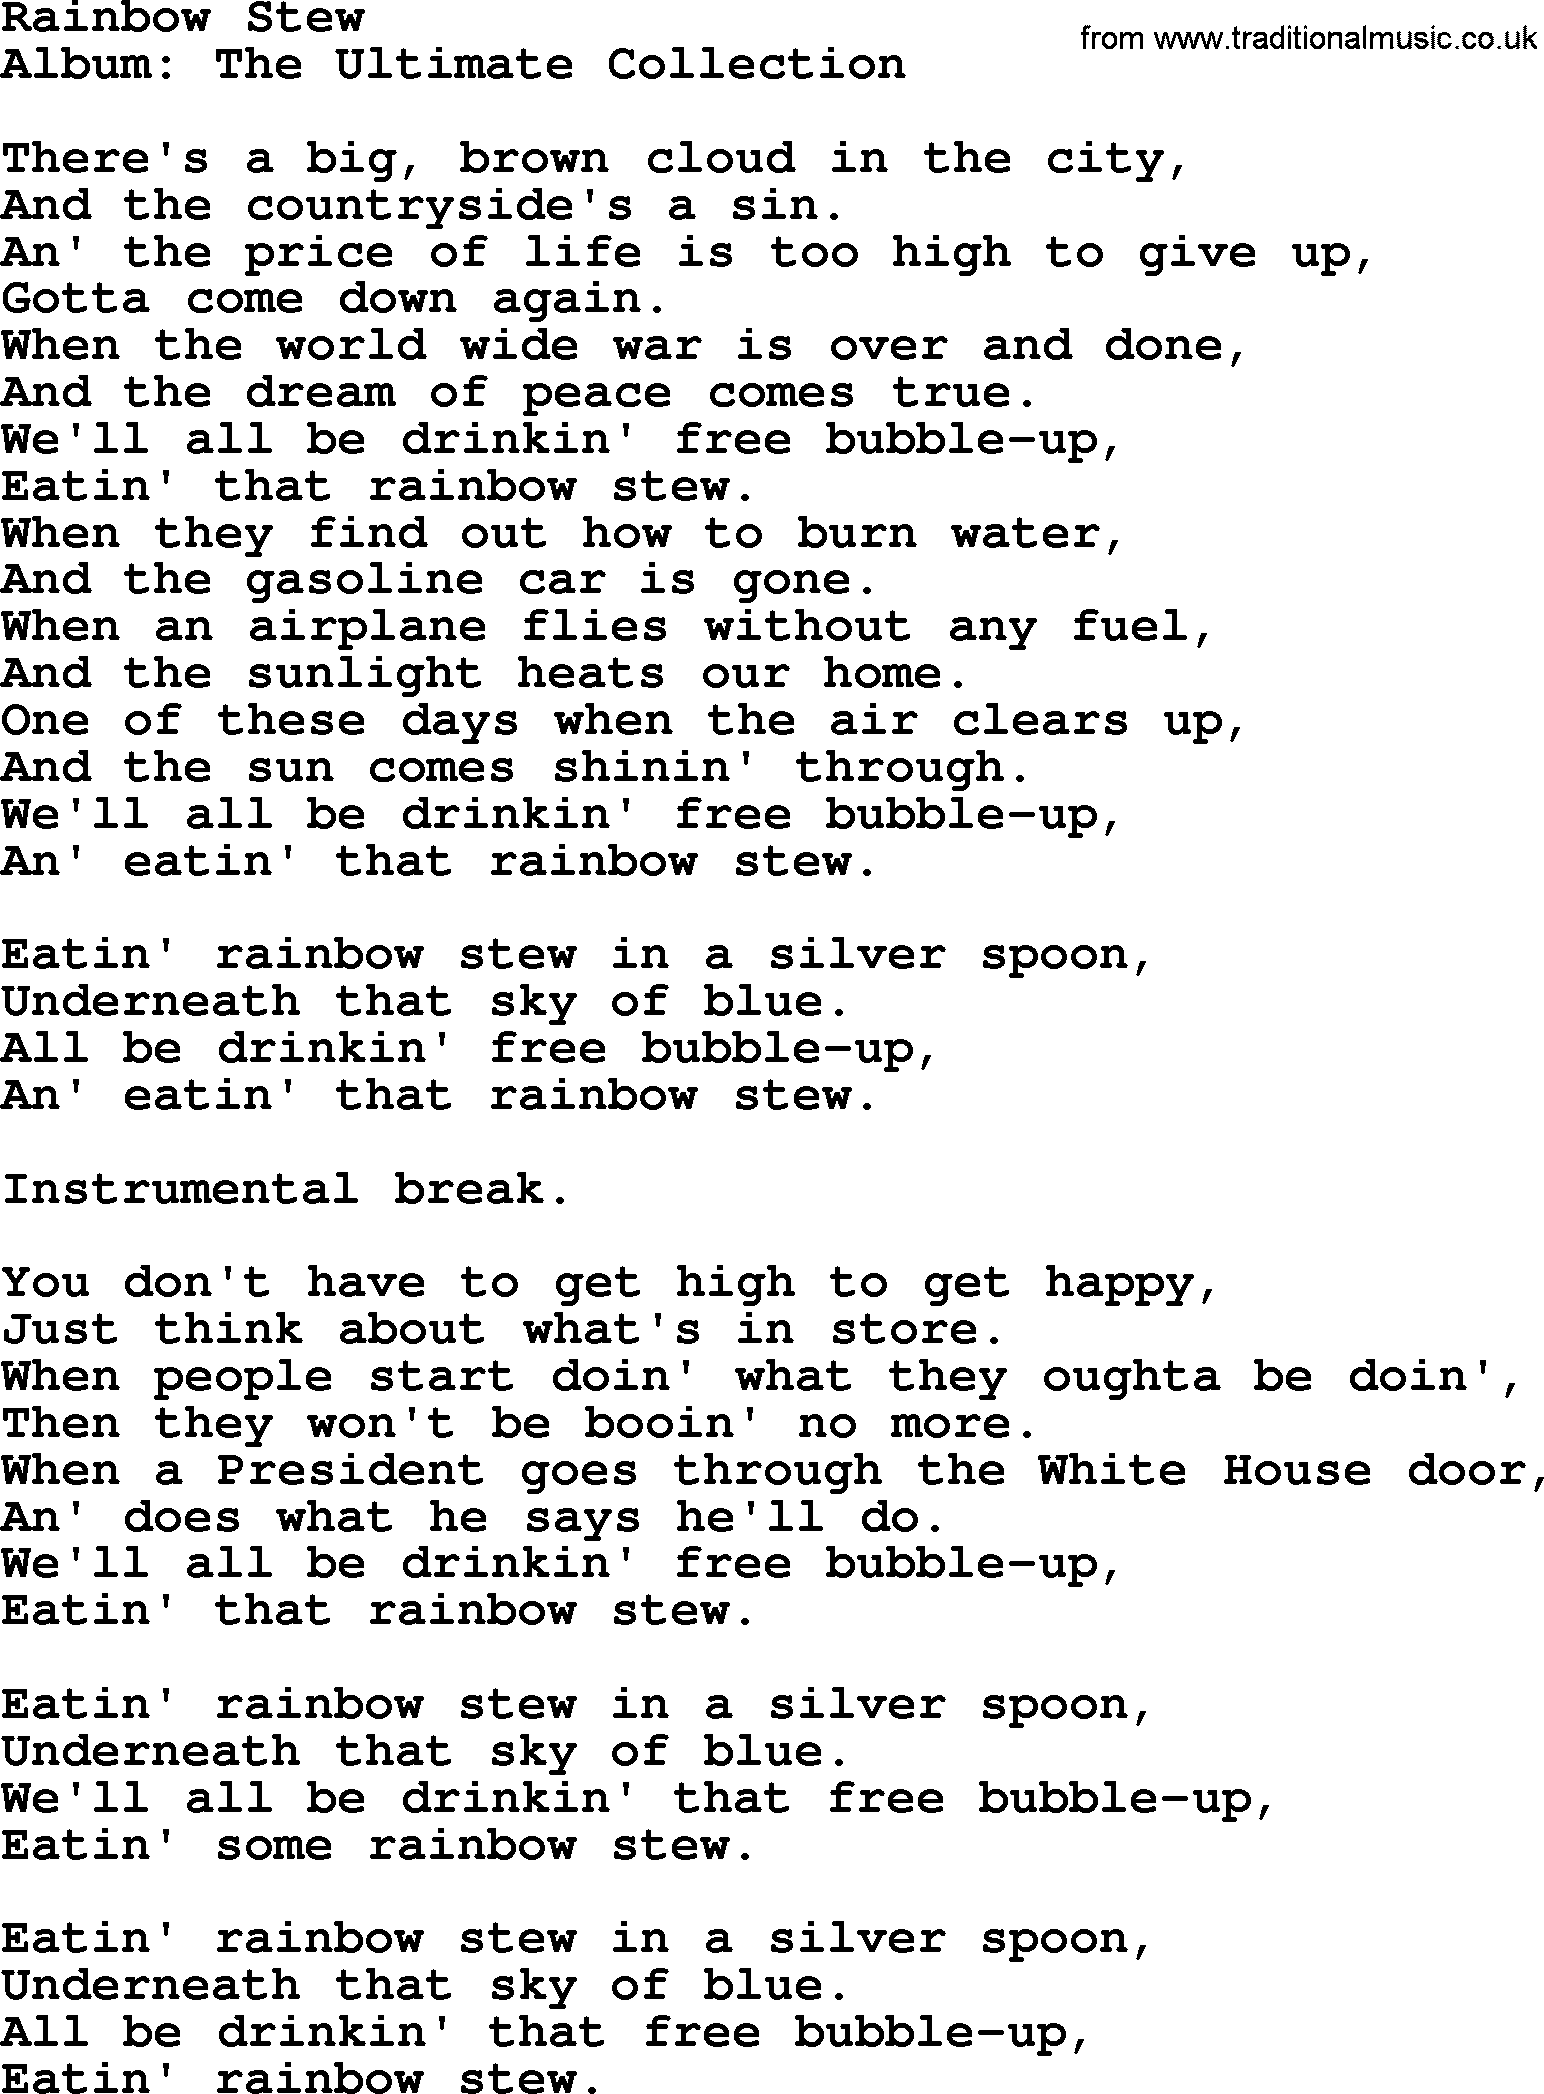 Merle Haggard song: Rainbow Stew, lyrics.